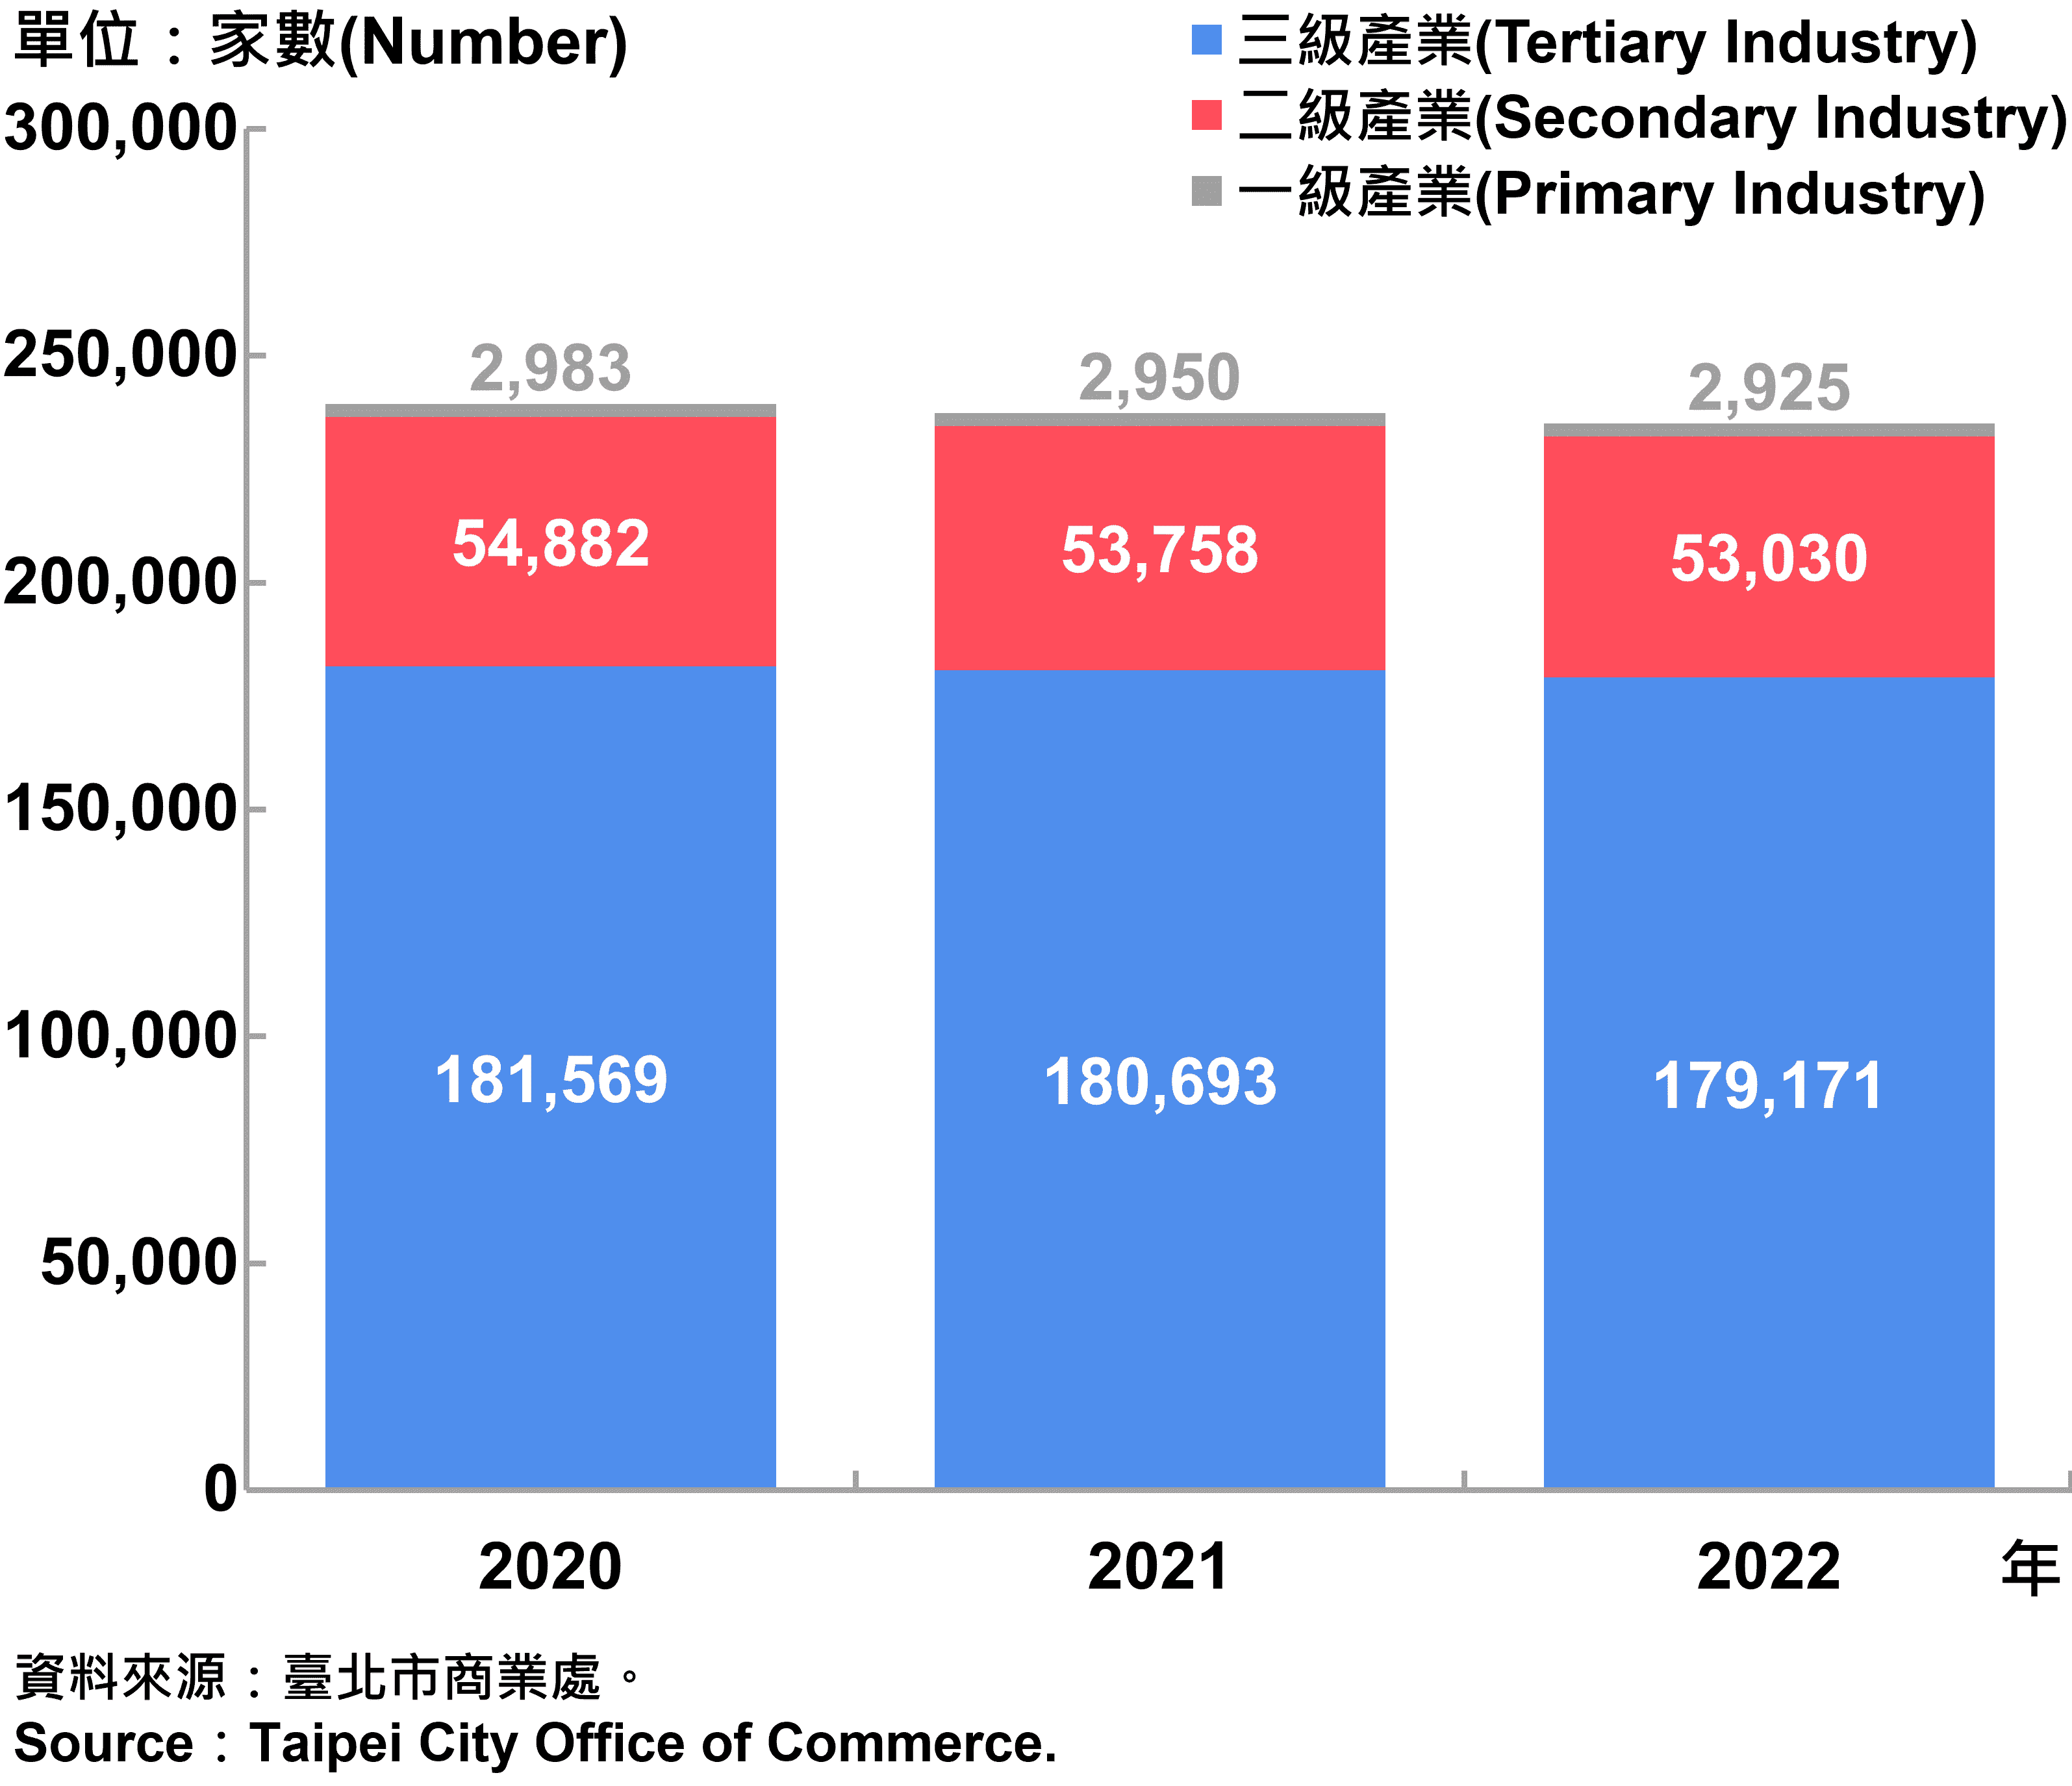 臺北市一二三級產業登記家數—2022 Number of Primary , Secondary and Tertiary Industry in Taipei City—2022